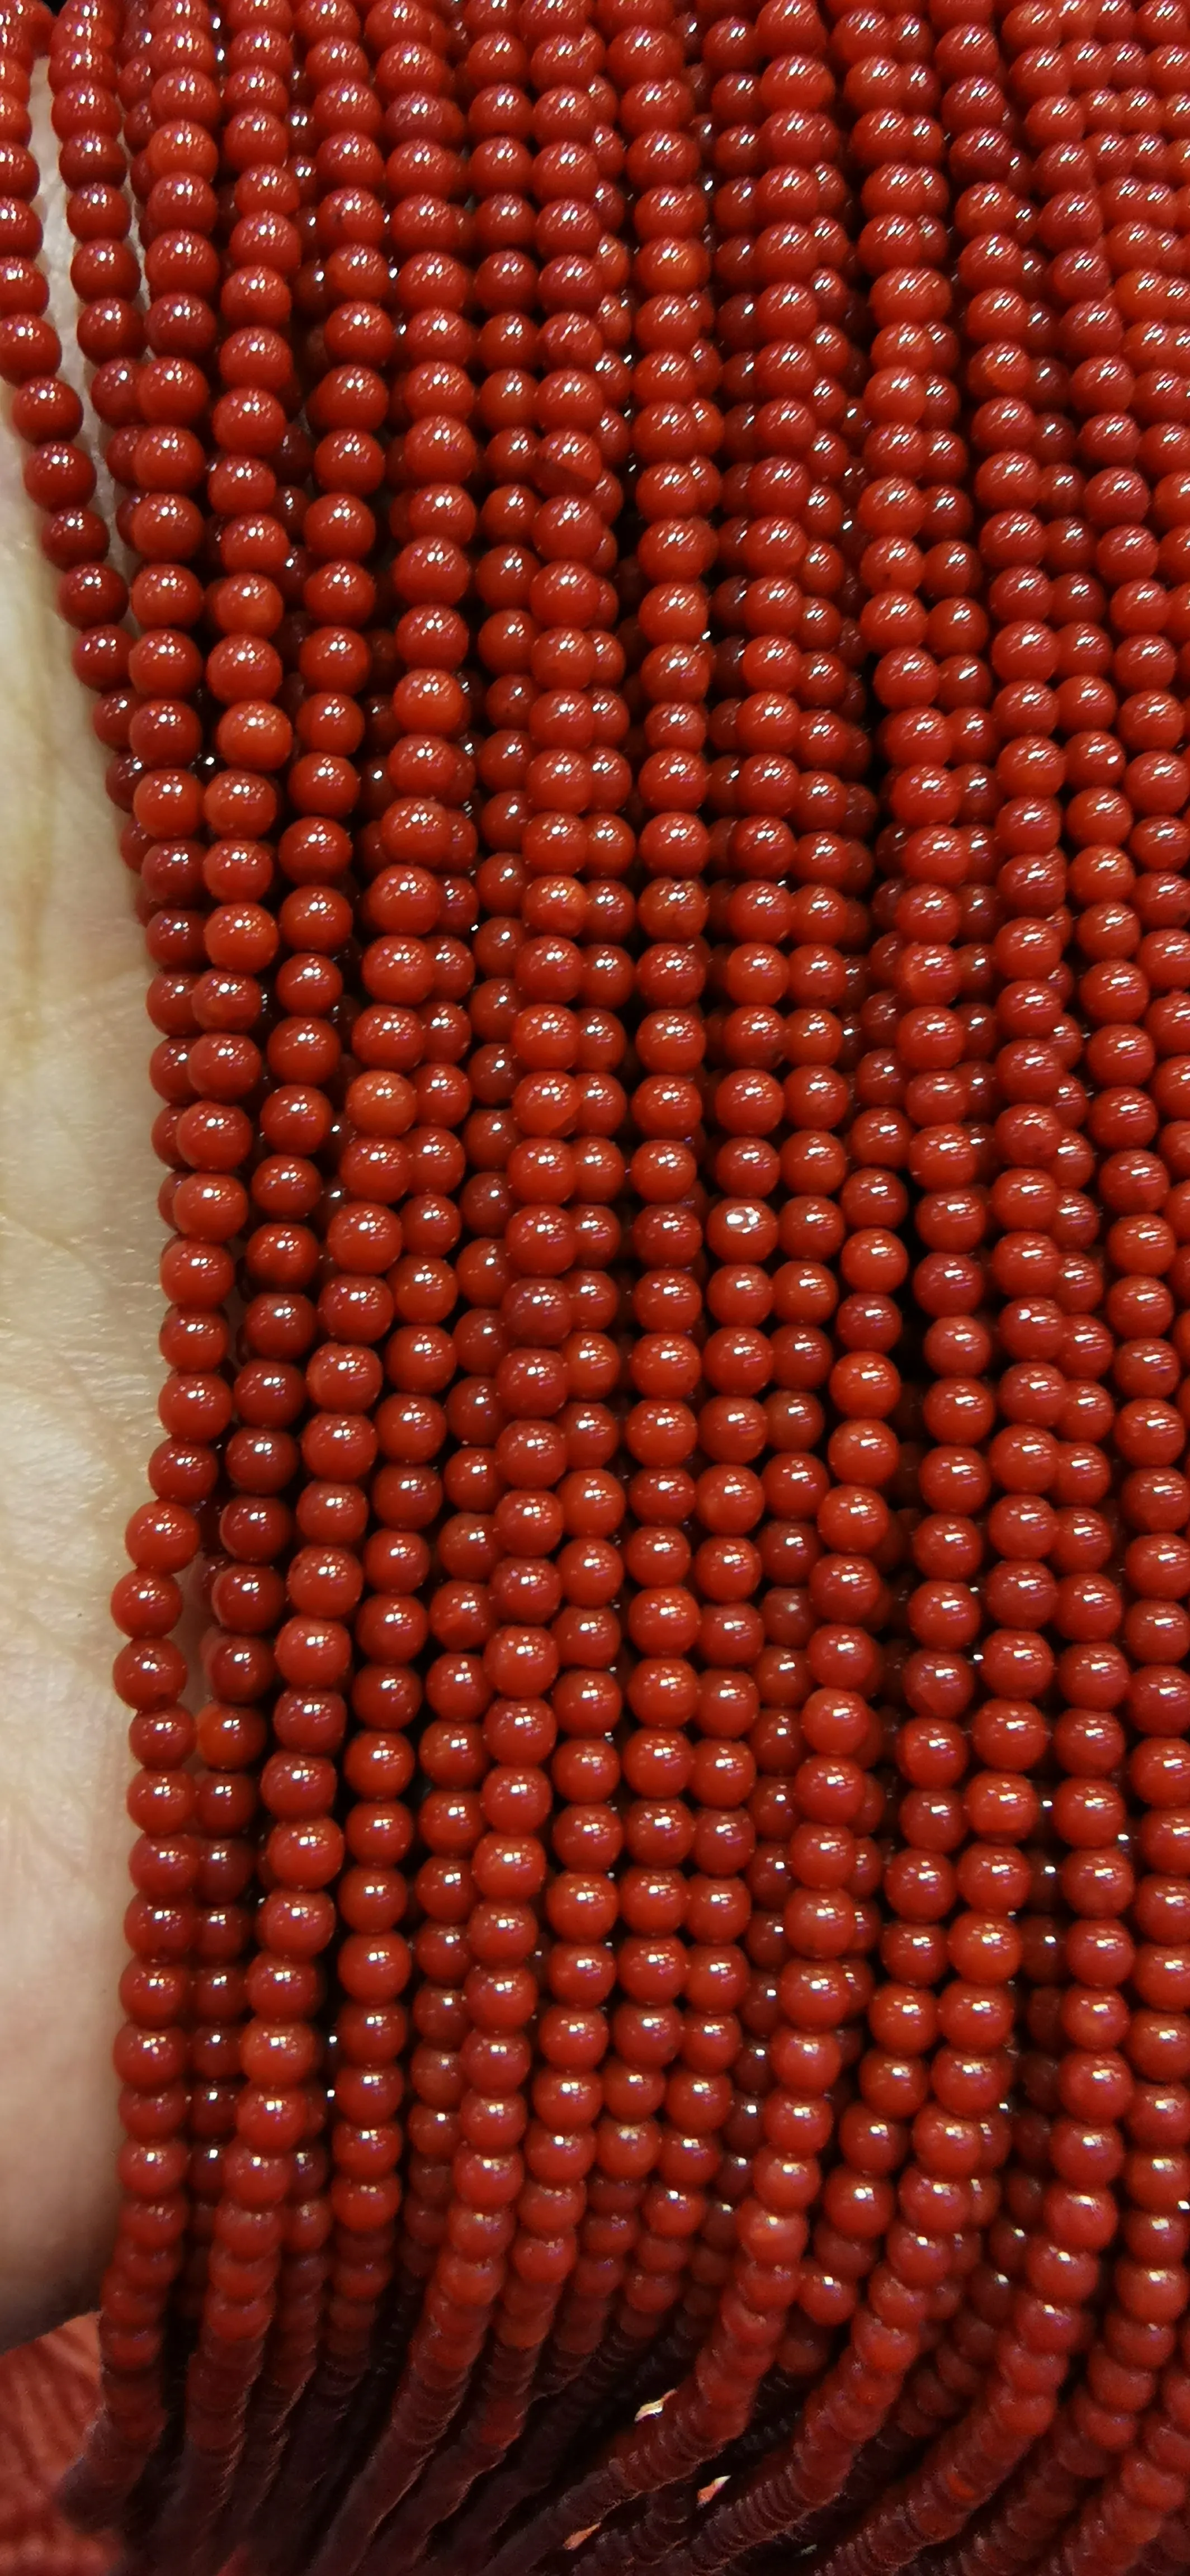 5strands echte seltene rote Koralle glatte runde Perlen Naturstein Edelstein 3-4 mm 16inch314i